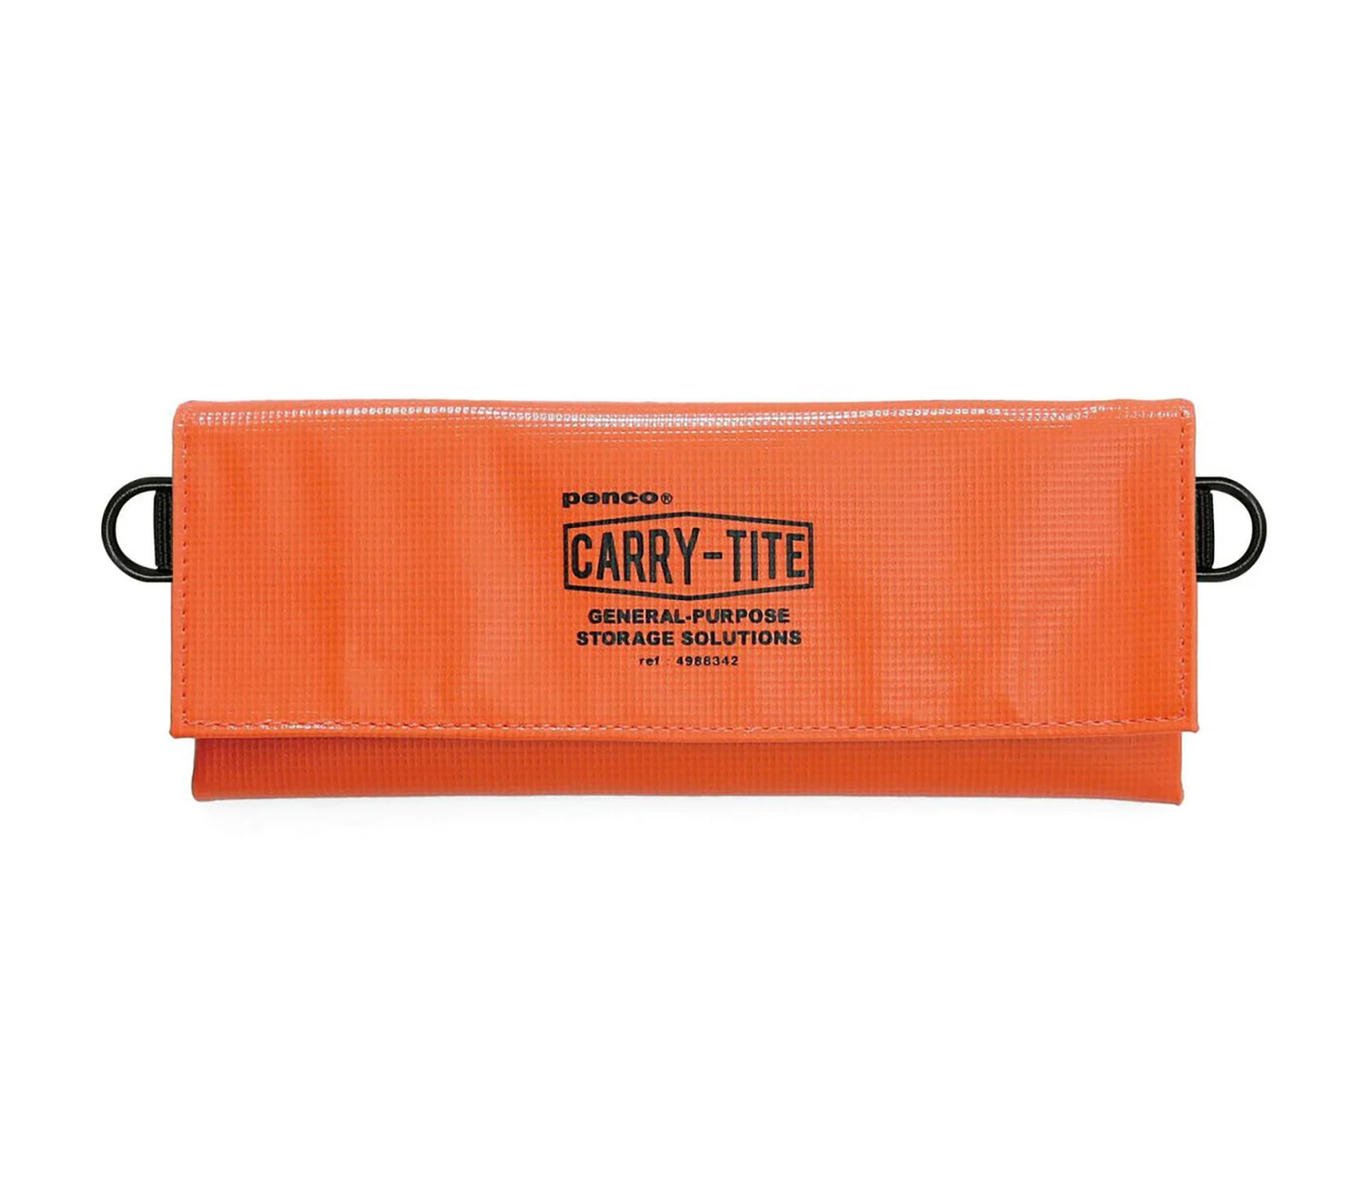 Multipurpose Carry Case - Tite Penco medium 2-way